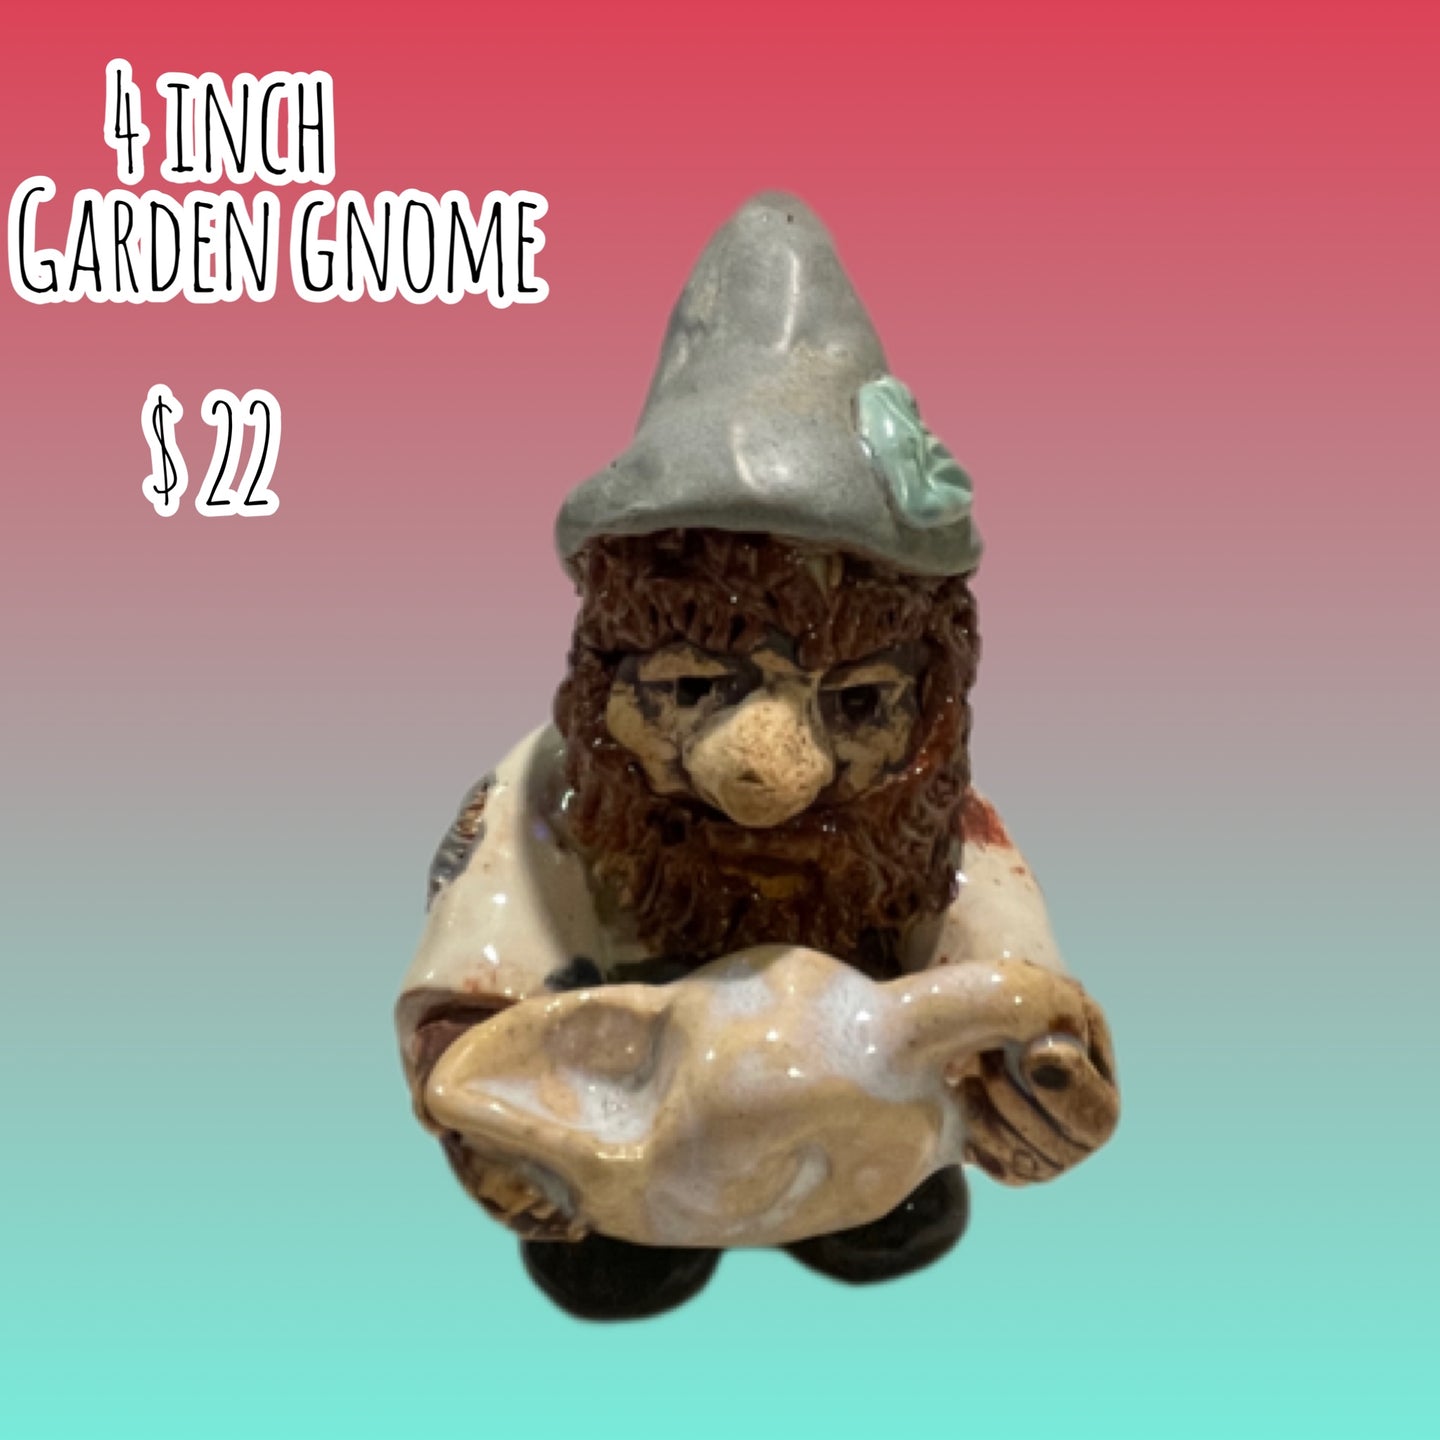 4 inch ceramic gnome sculpture